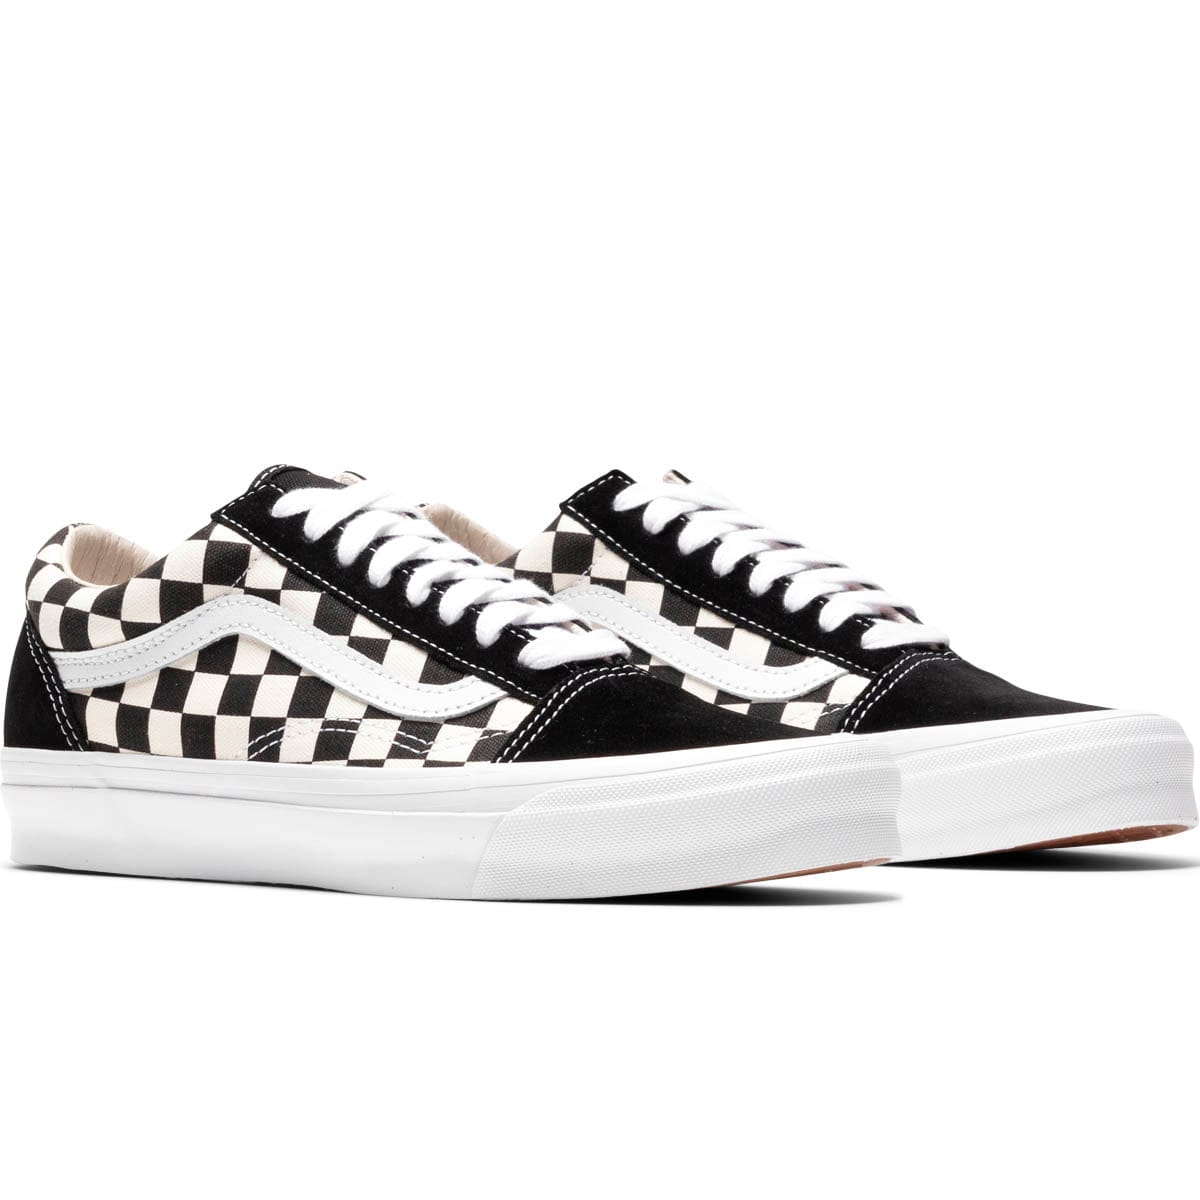 Vans Old Skool Checkerboard Sneakers in Black and White